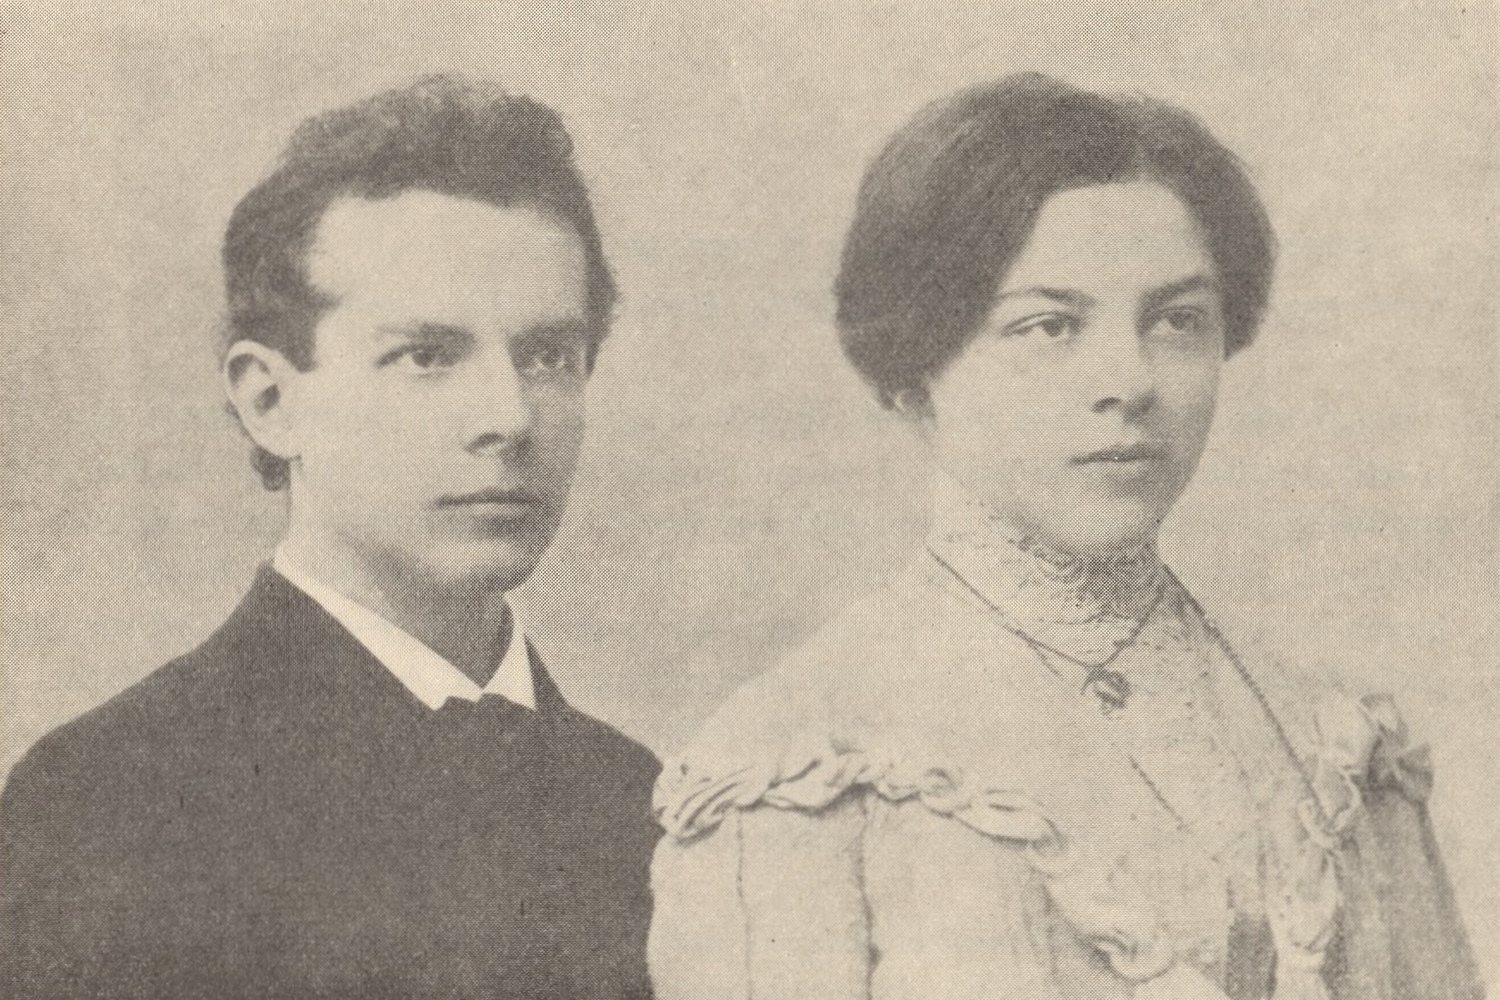 Béla Bartók et sa soeur cadette Elza, 1904, collection Dille, publié dans l'album Hungaroton SLPX 1300